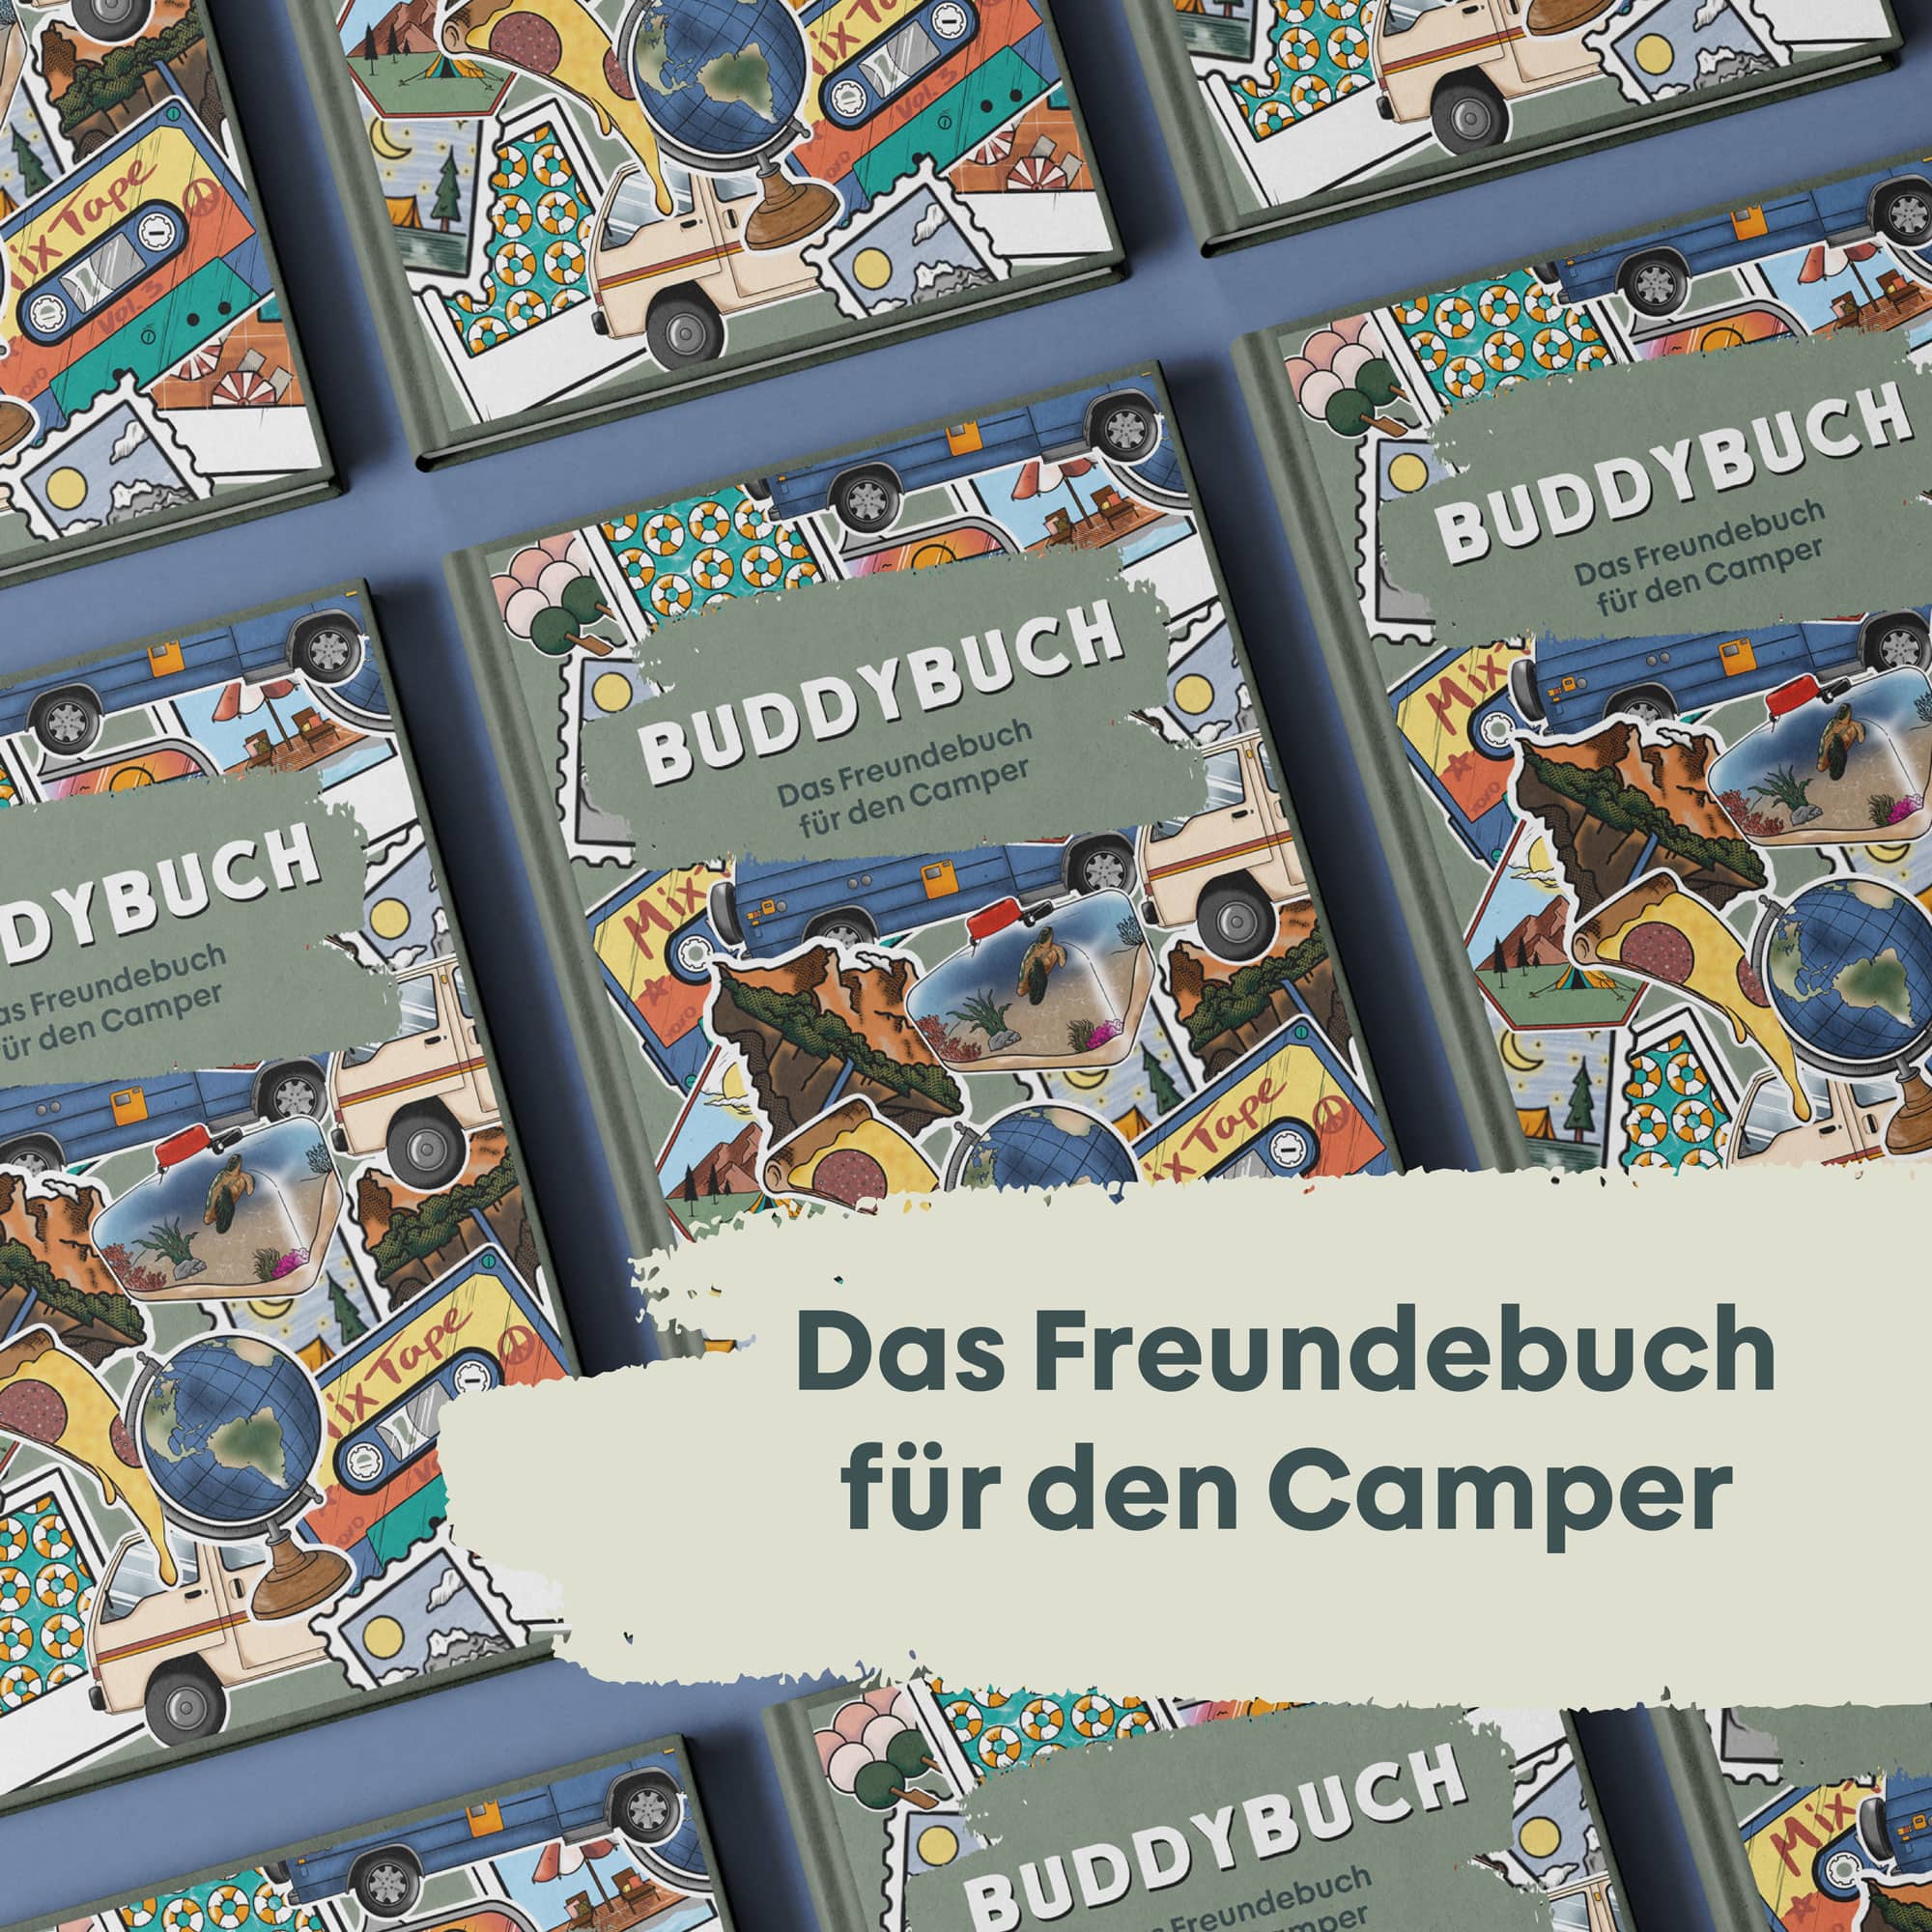 BUDDYBUCH - Il libro degli amici per i campeggiatori